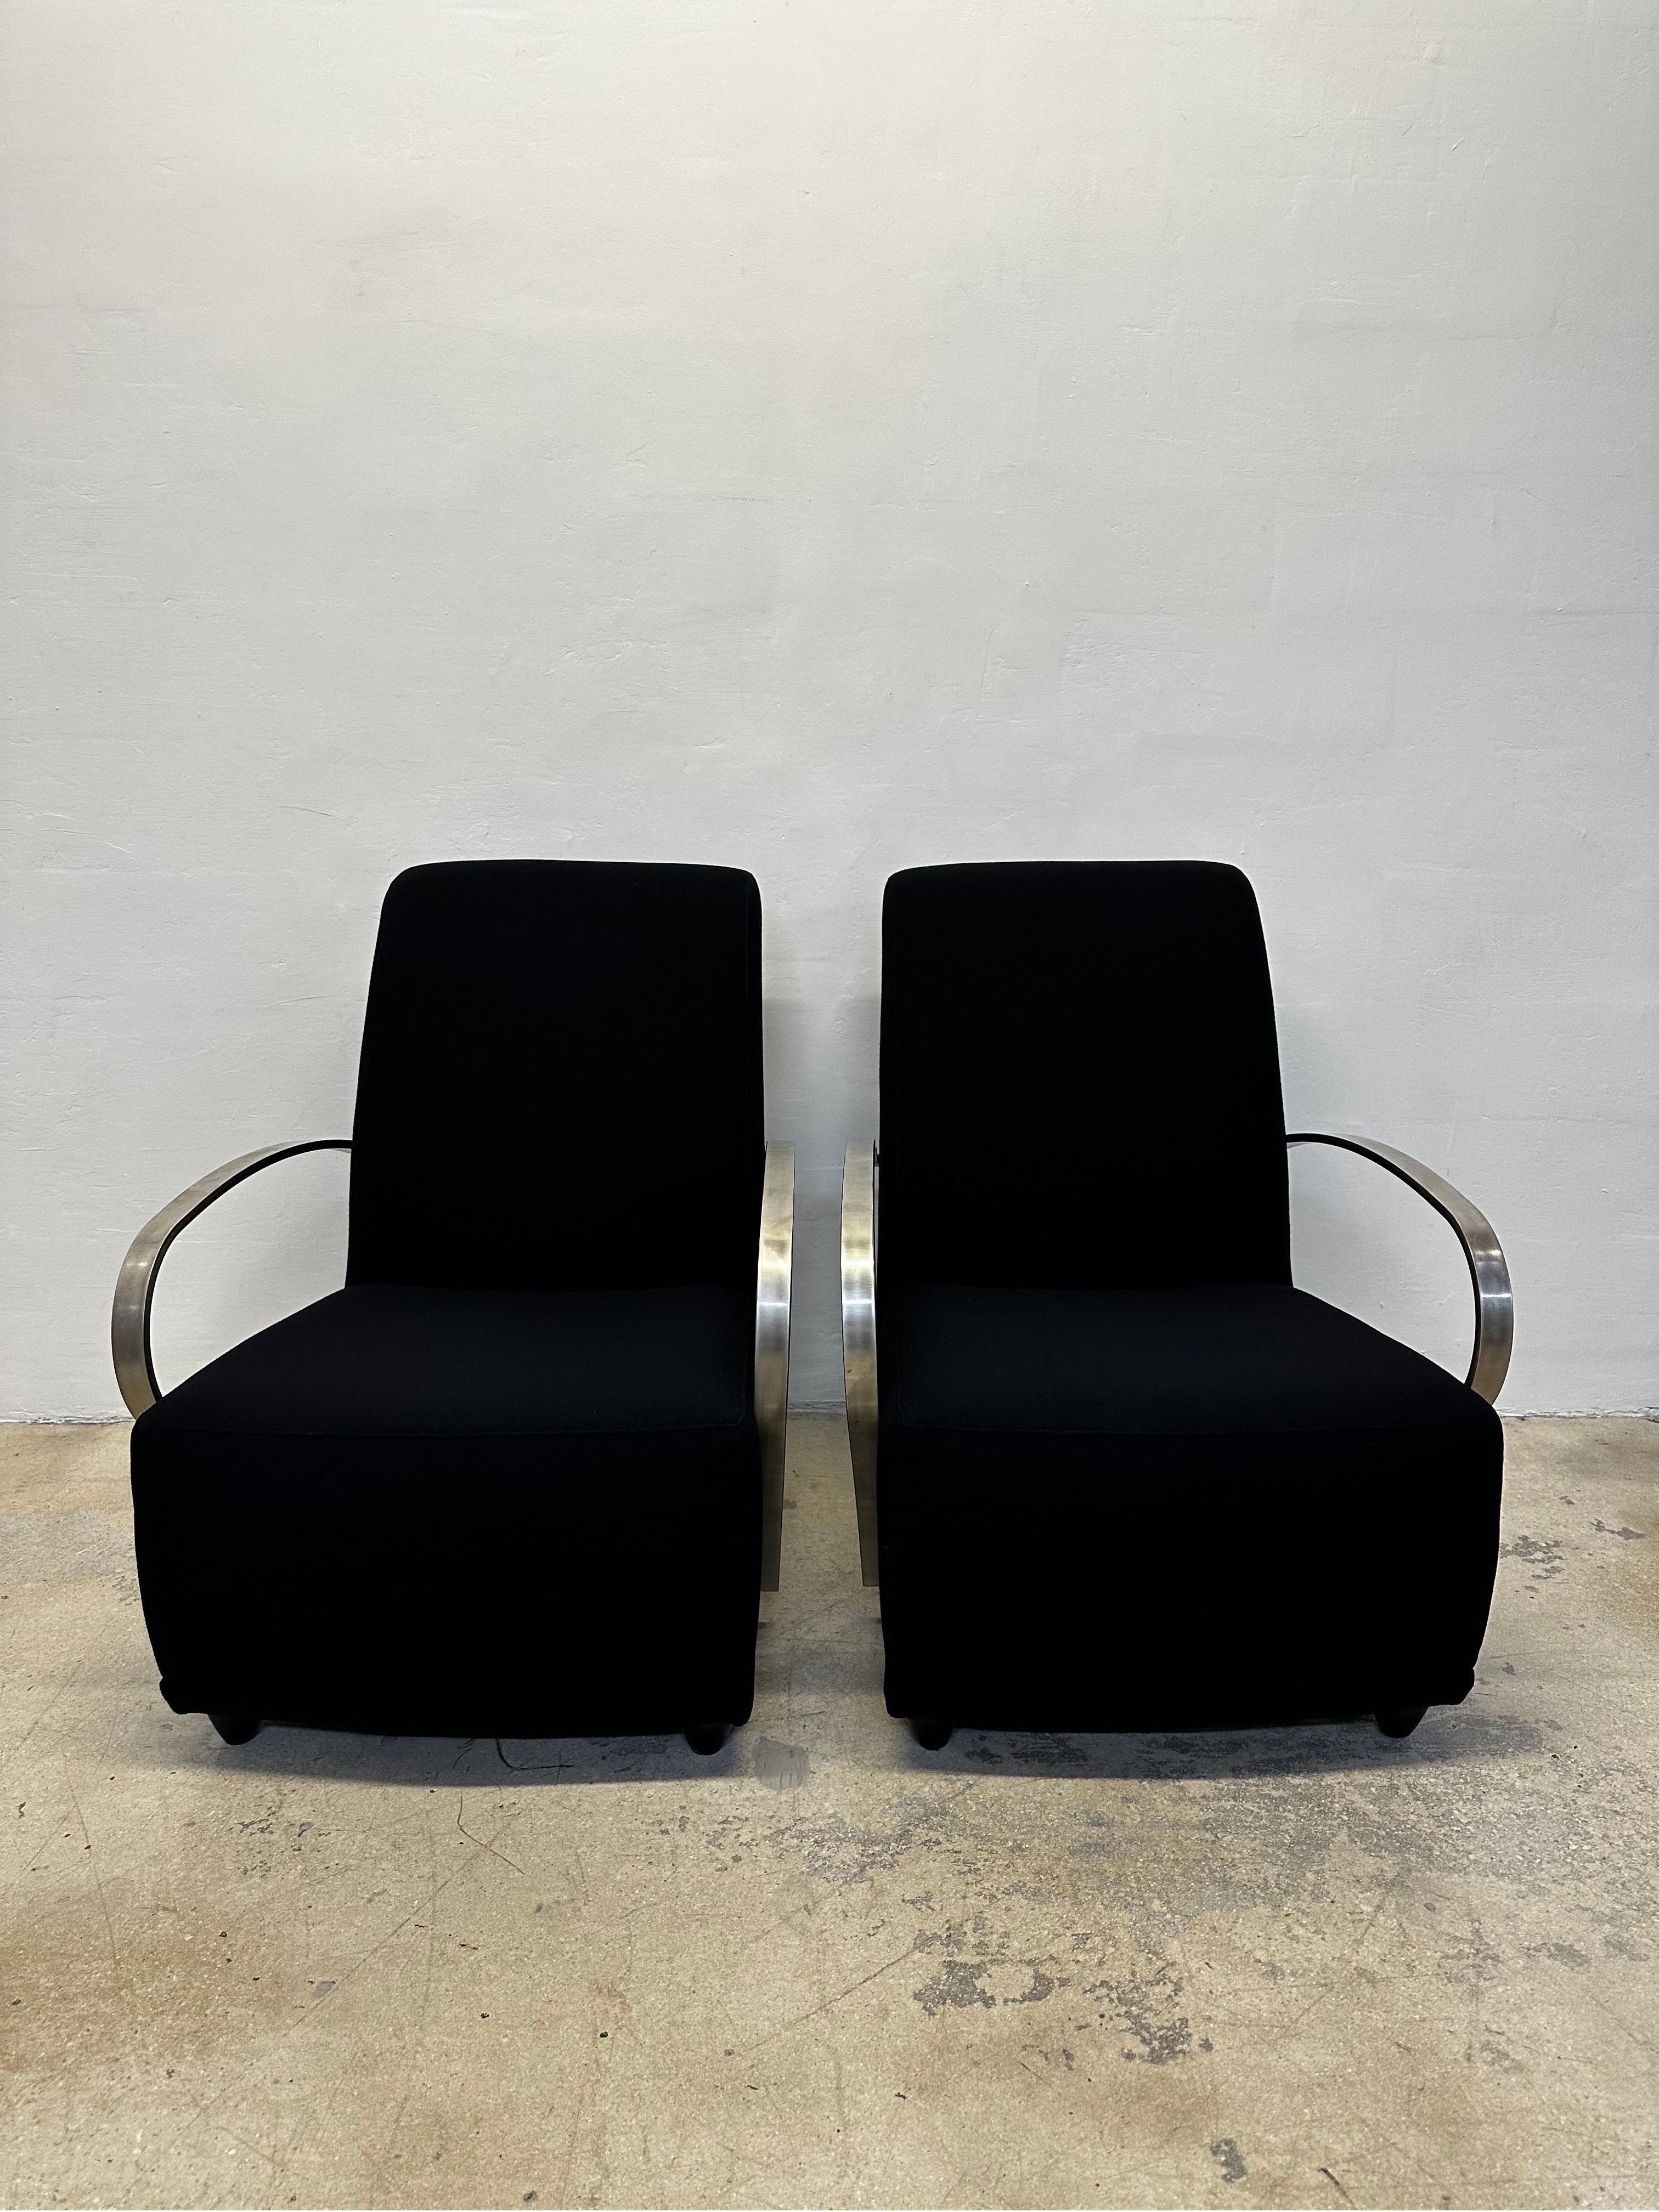 Ein Paar außergewöhnliche Art Deco Revival Sessel aus schwarzem Stoff mit geschwungenen Stahlarmen von Directional Furniture um 1980.  Der Stoff ist original und in nahezu perfektem Zustand.